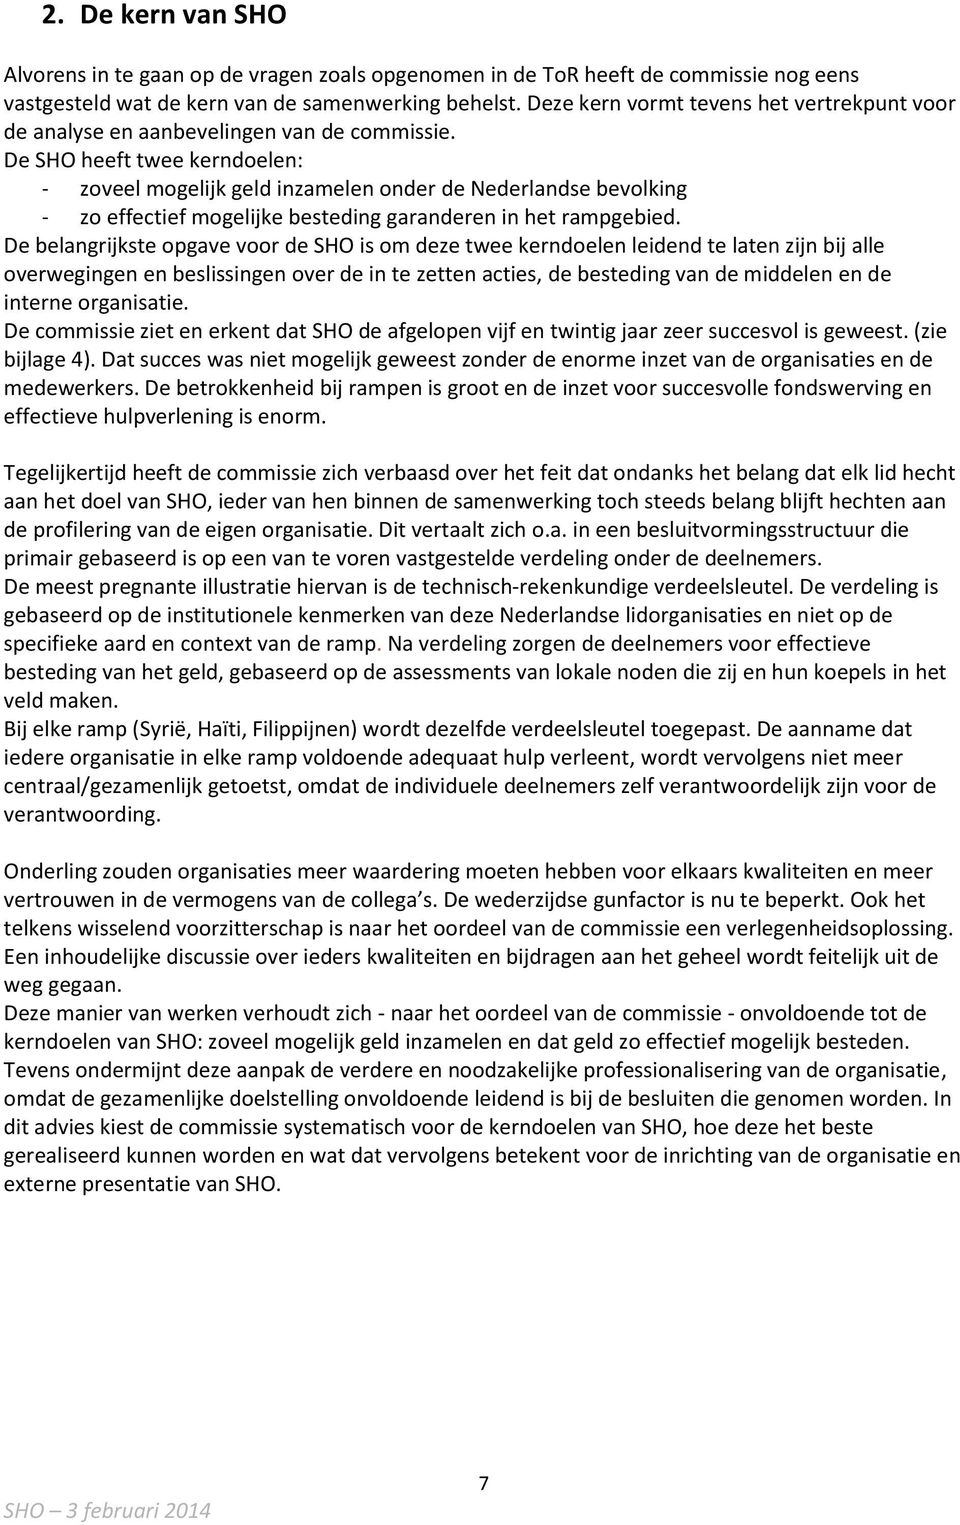 De SHO heeft twee kerndoelen: - zoveel mogelijk geld inzamelen onder de Nederlandse bevolking - zo effectief mogelijke besteding garanderen in het rampgebied.